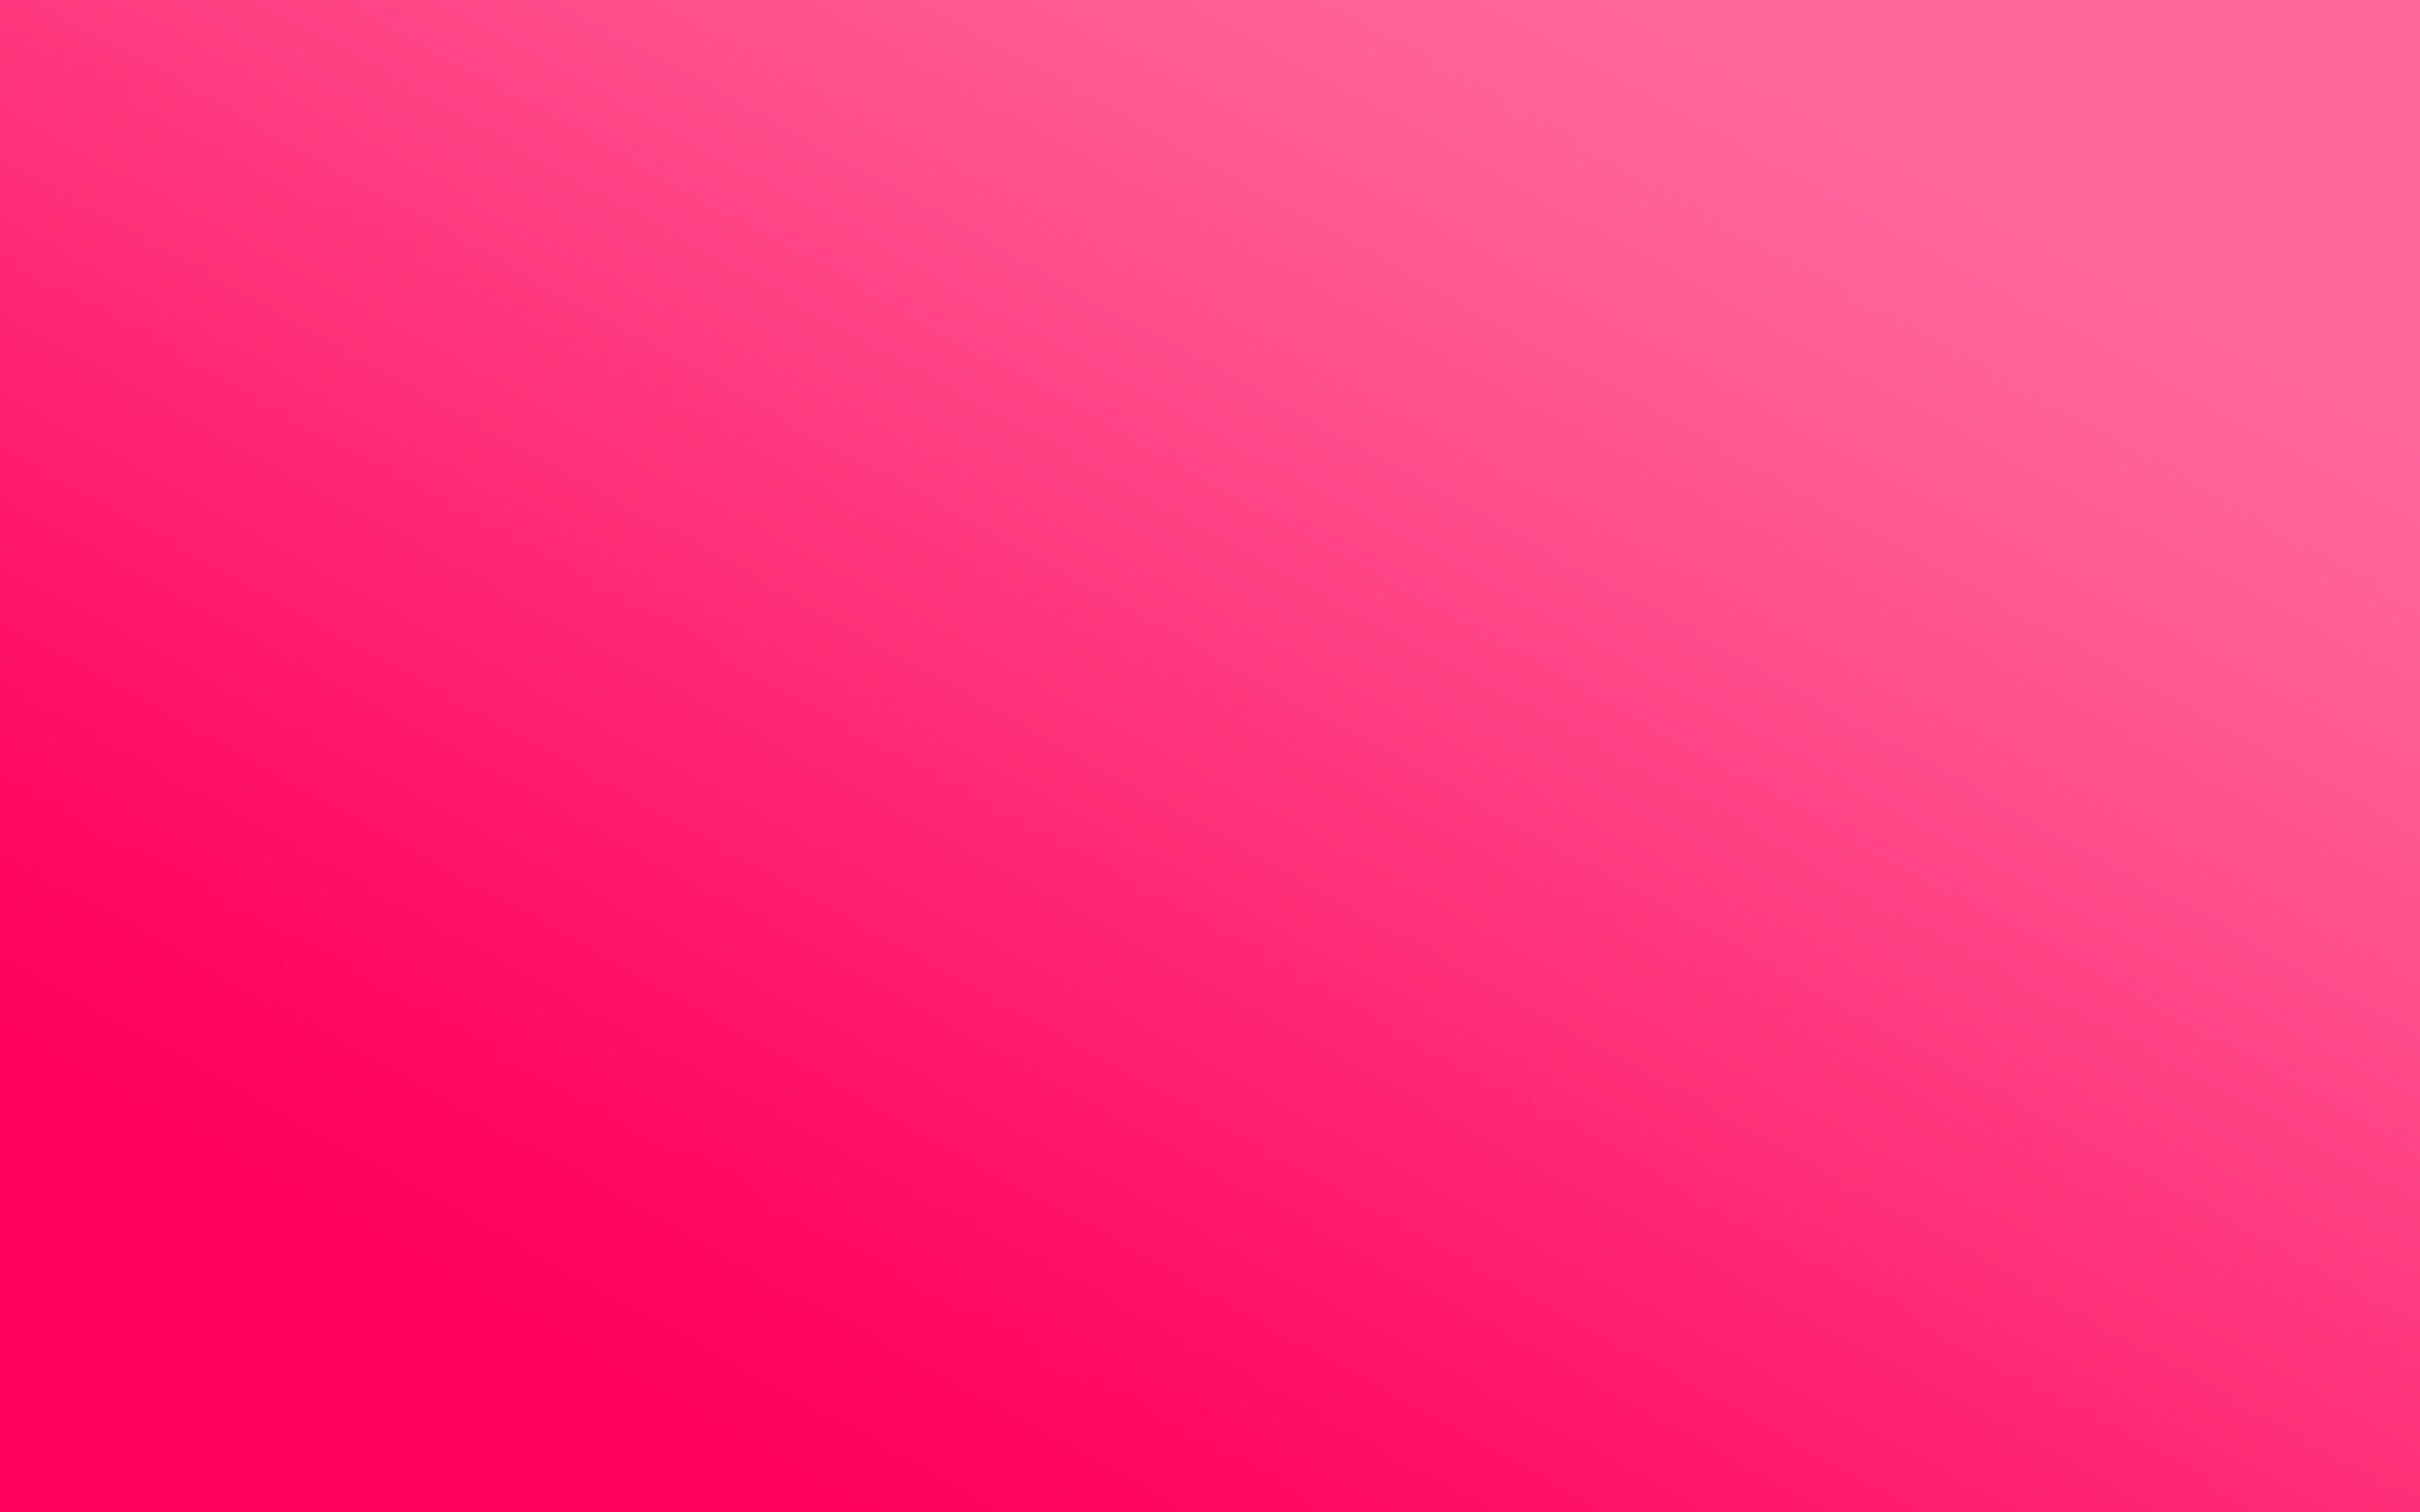 Fondos de pantalla de color rosa, wallpapers hd gratis